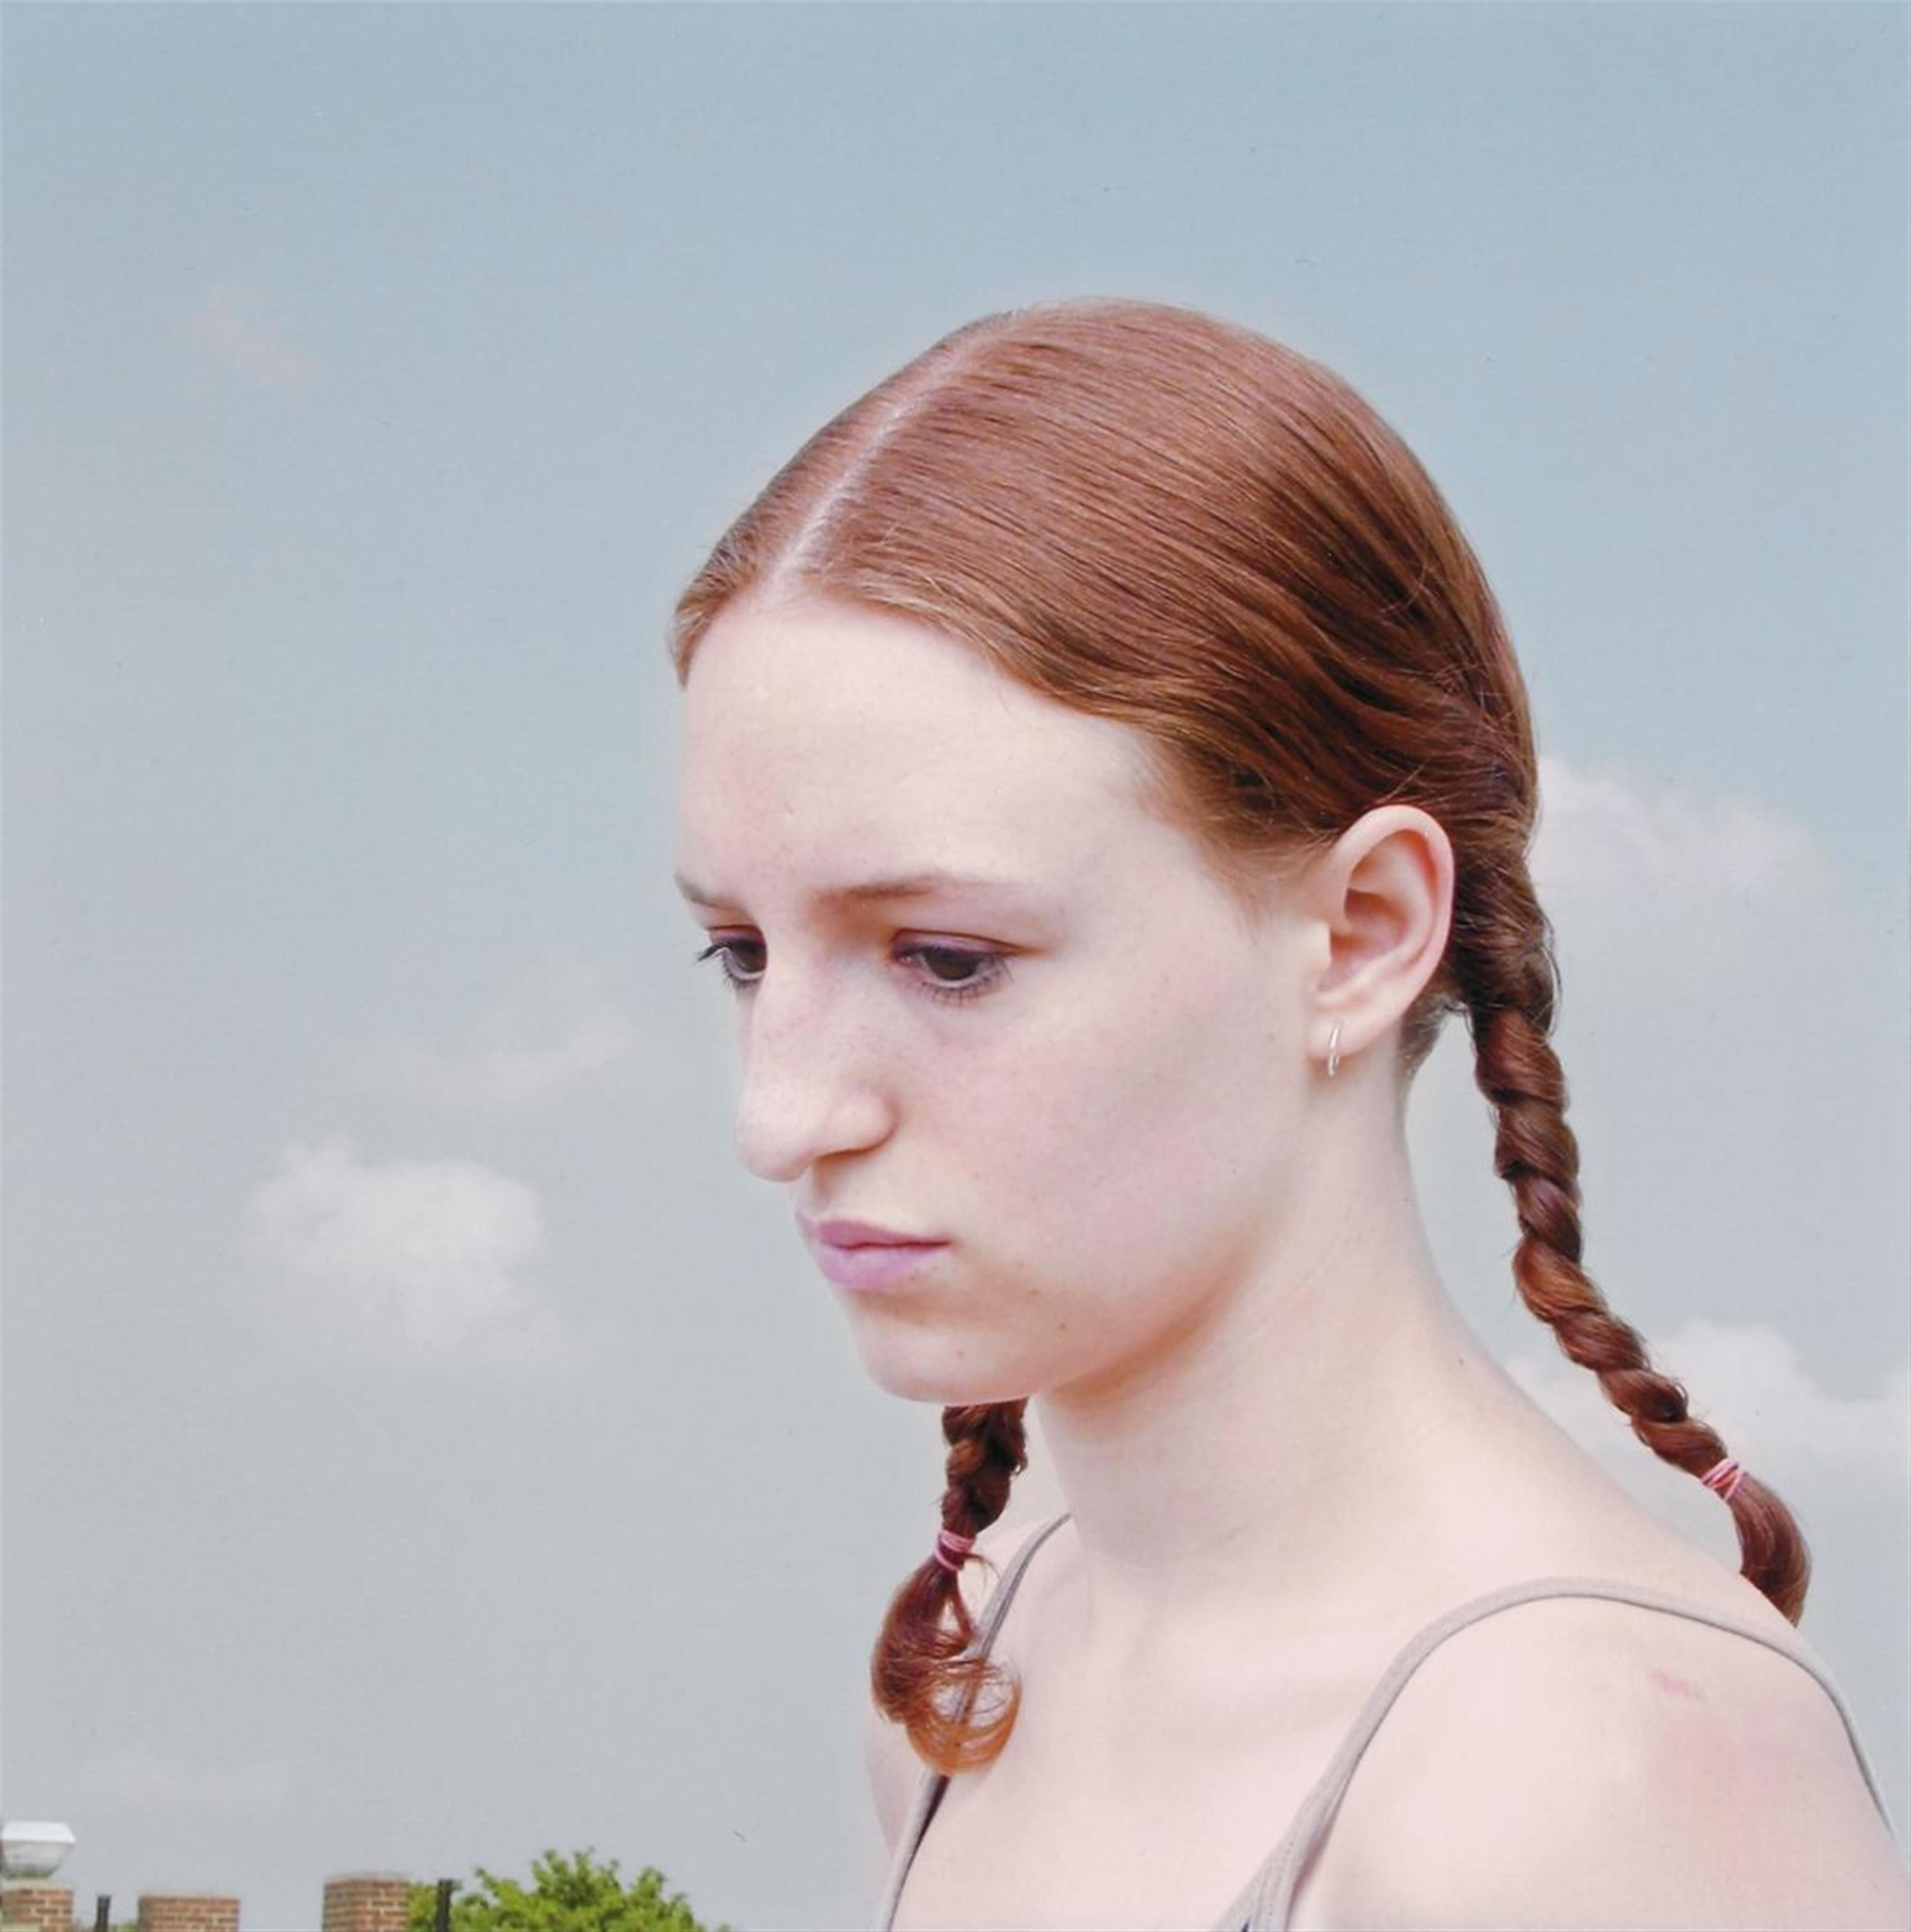 Loretta Lux - PORTRAIT OF A GIRL 2 - image-1